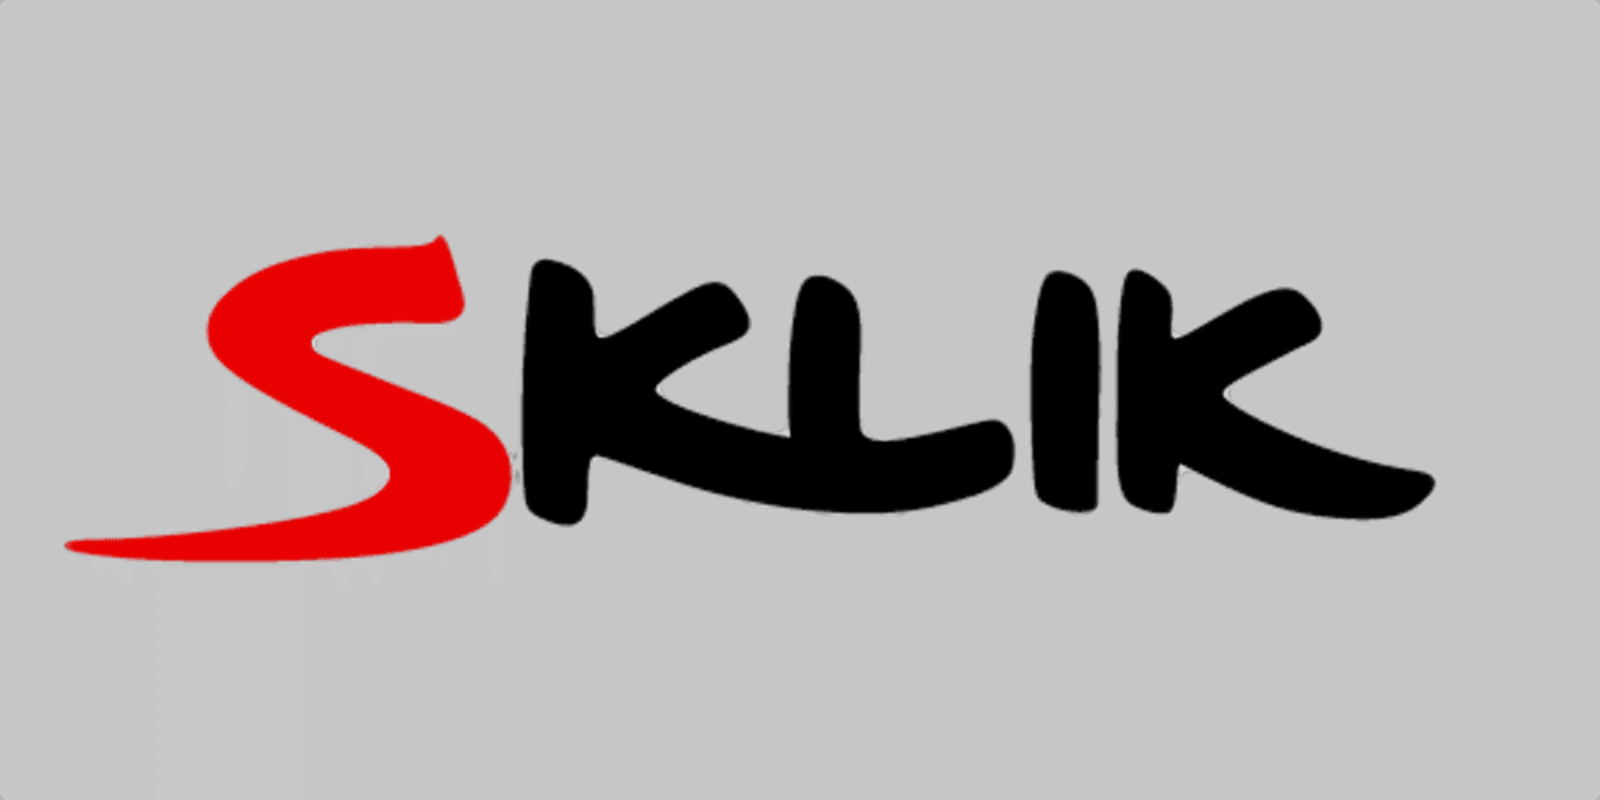 Sklik logo - spárování účtu klienta na firemní účet